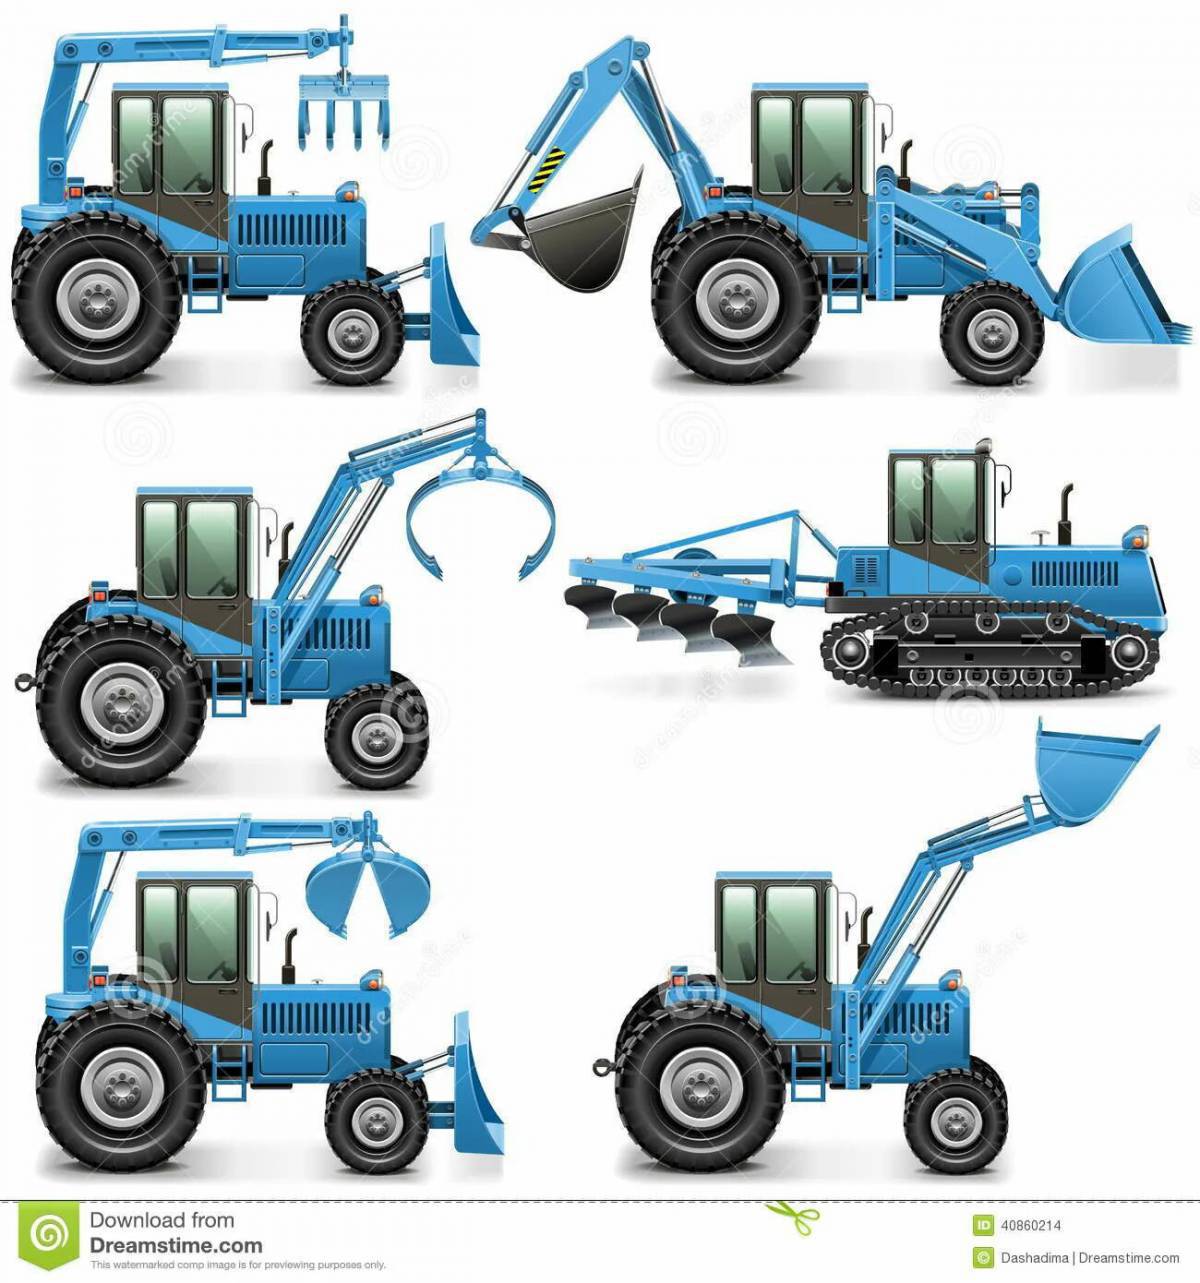 Синий трактор с ковшом #34